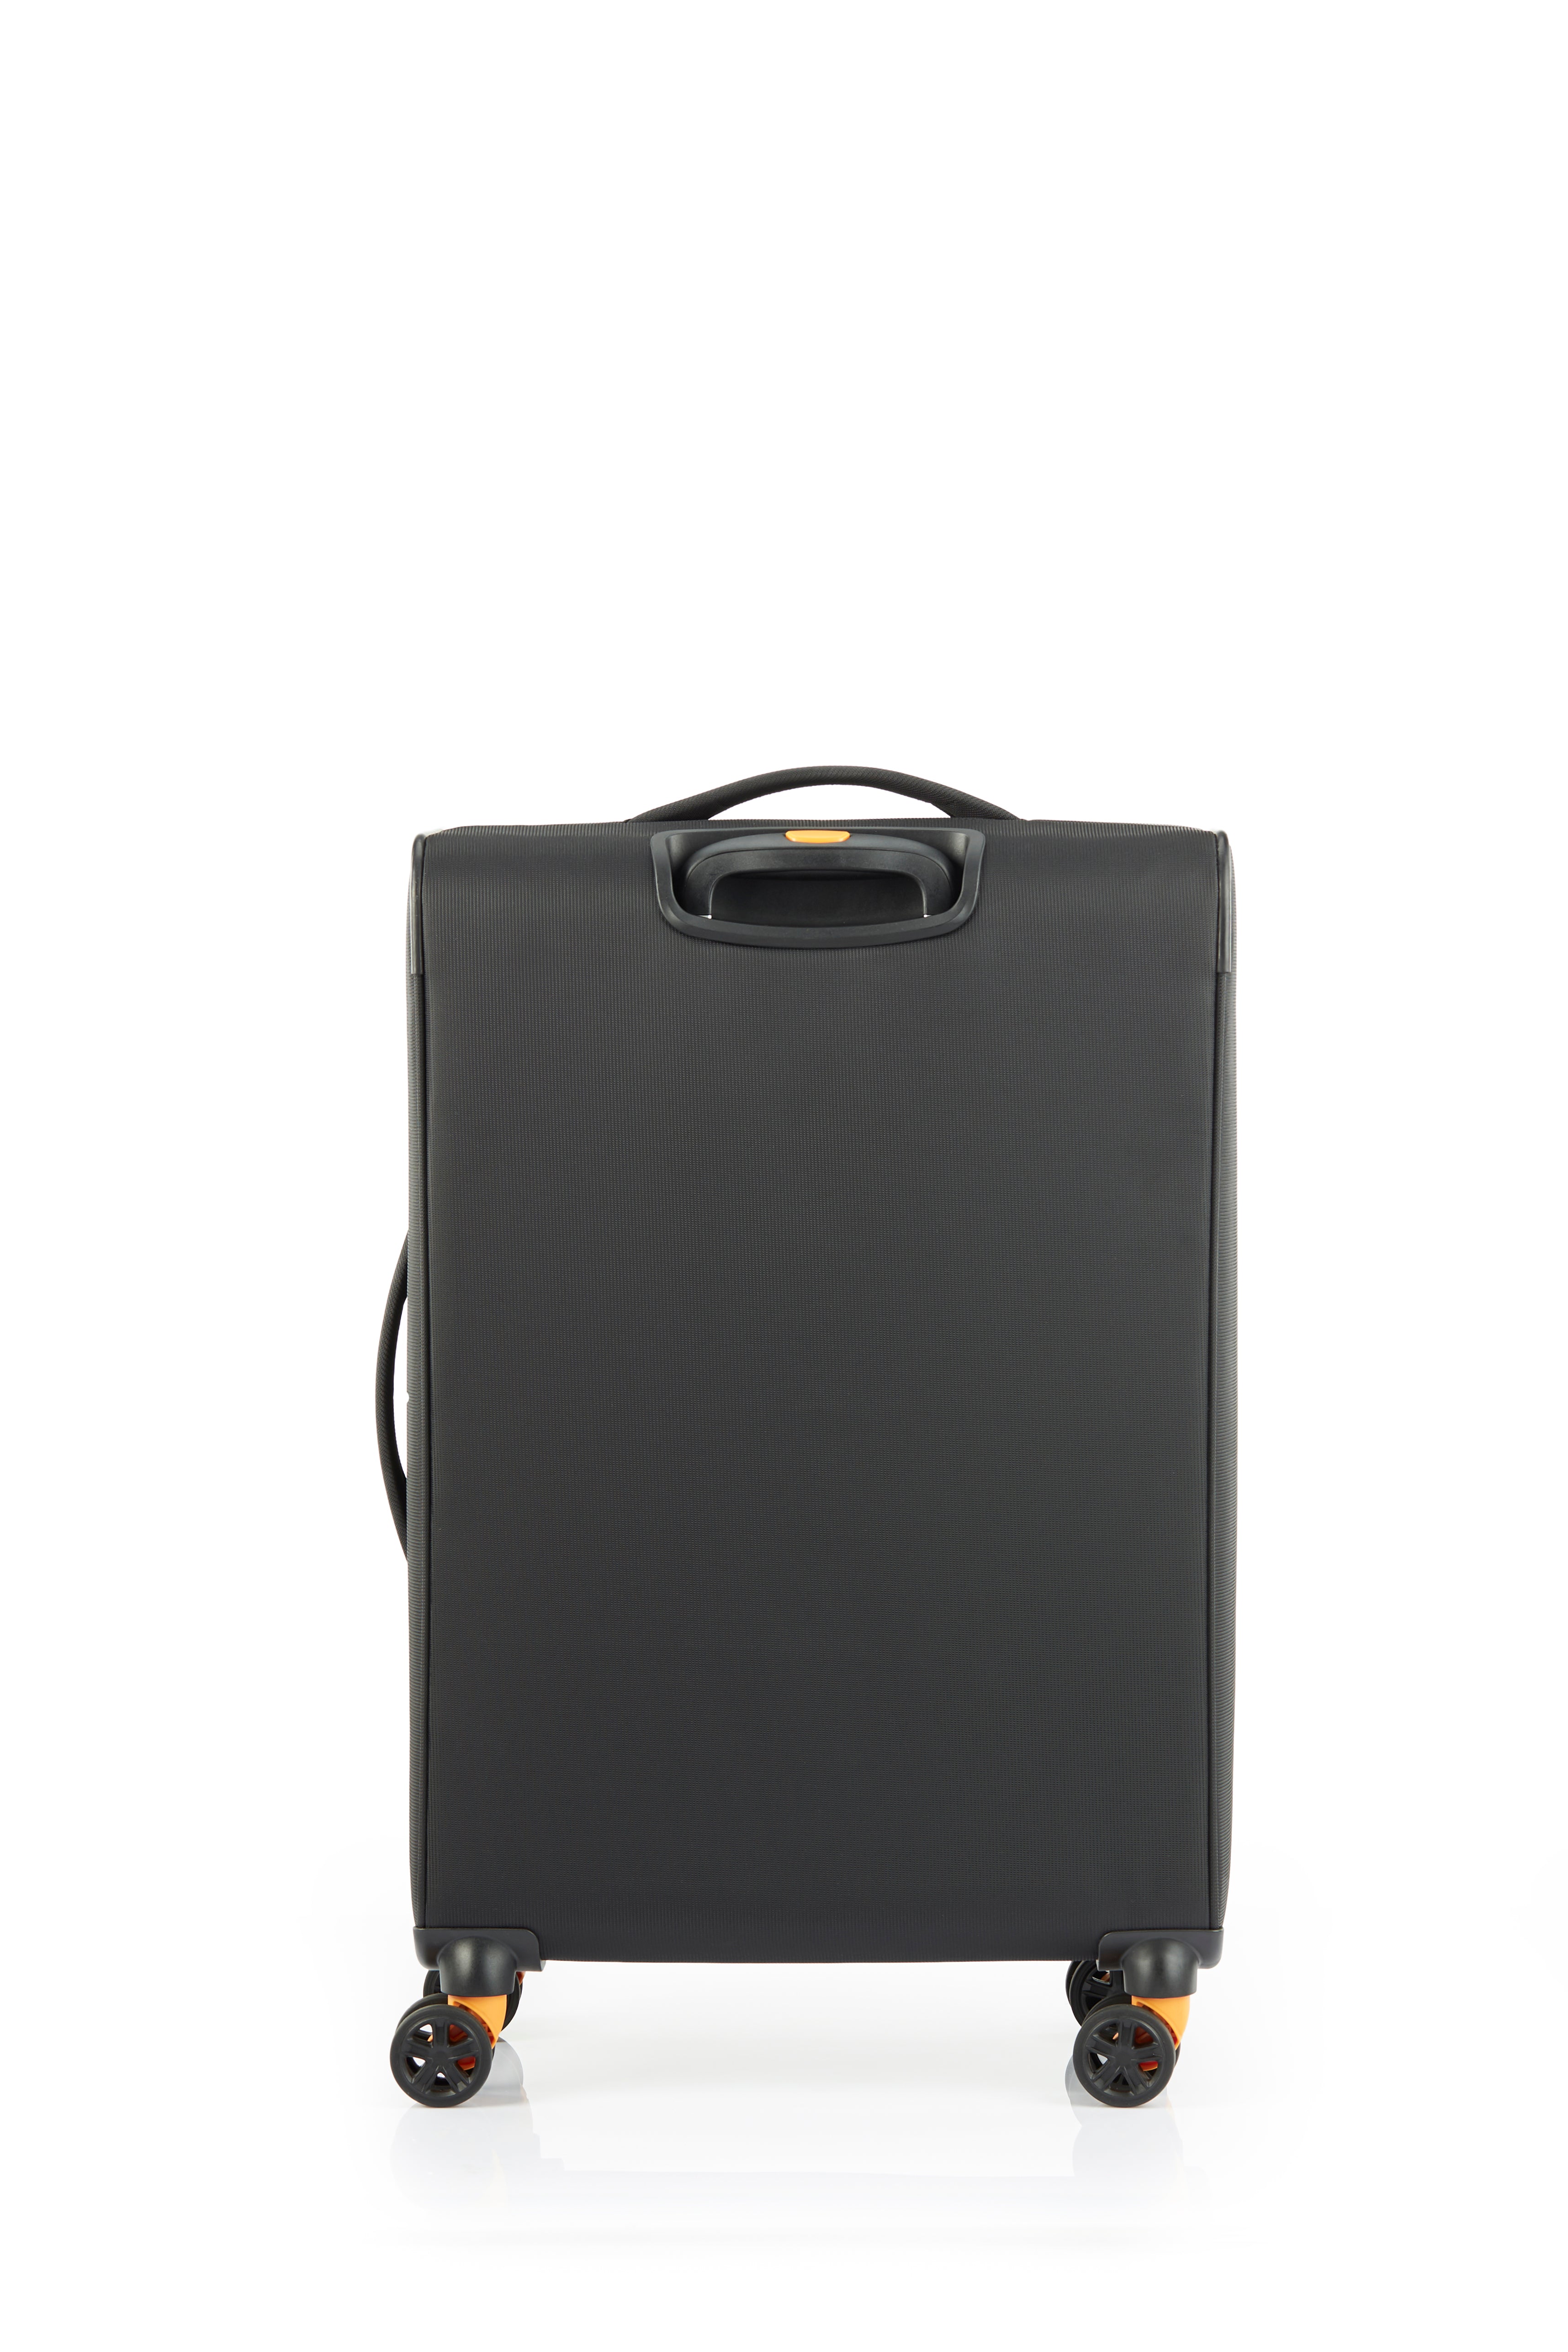 American Tourister - Applite ECO 71cm Medium Suitcase - Black/Must-5